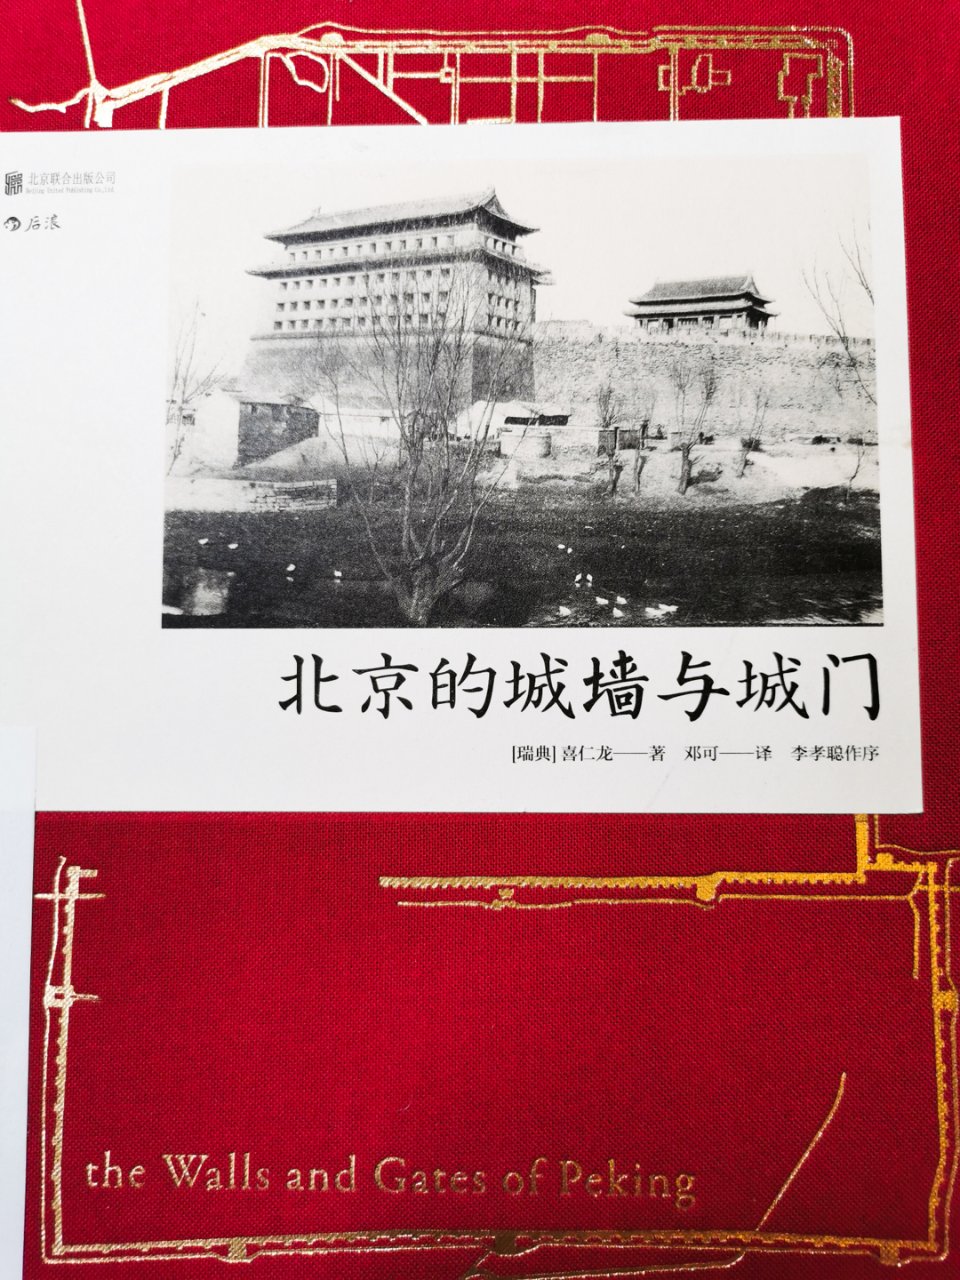 吃货也需要精神食粮📚丨北京的城墙与城门🧱...